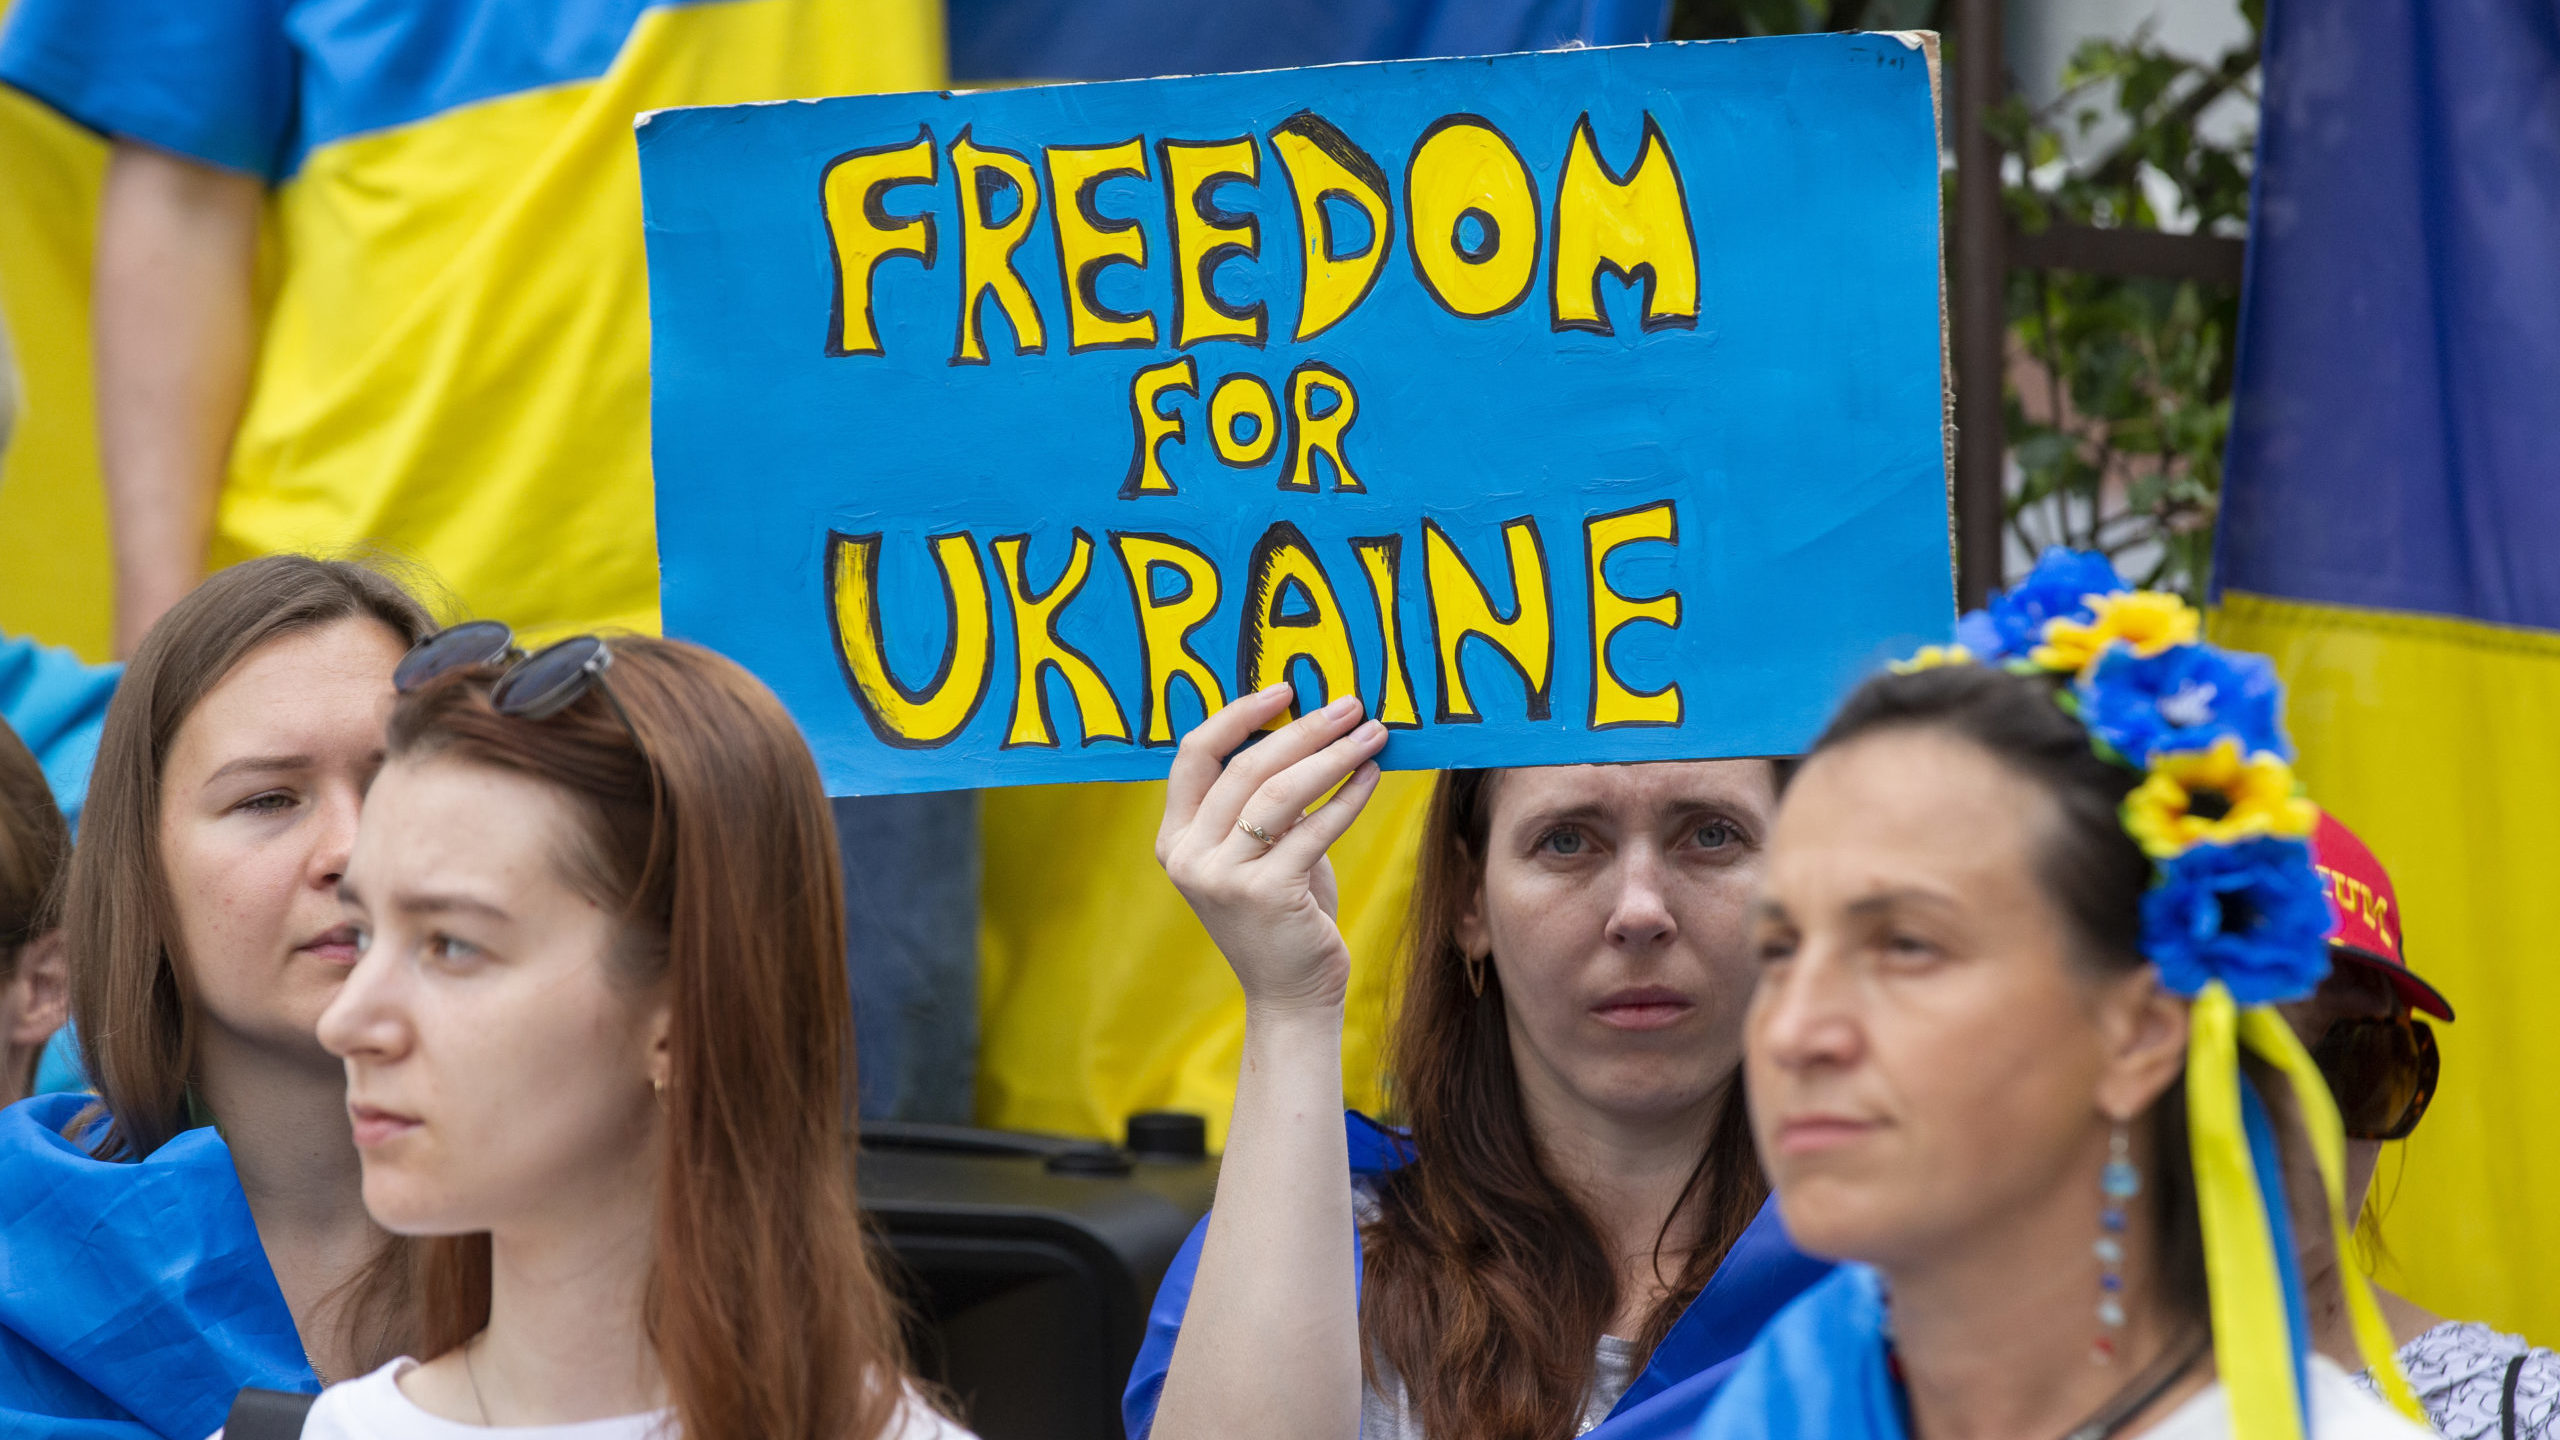 La guerra en Ucrania cumple 120 días y Alemania eleva la alarma por la crisis del gas